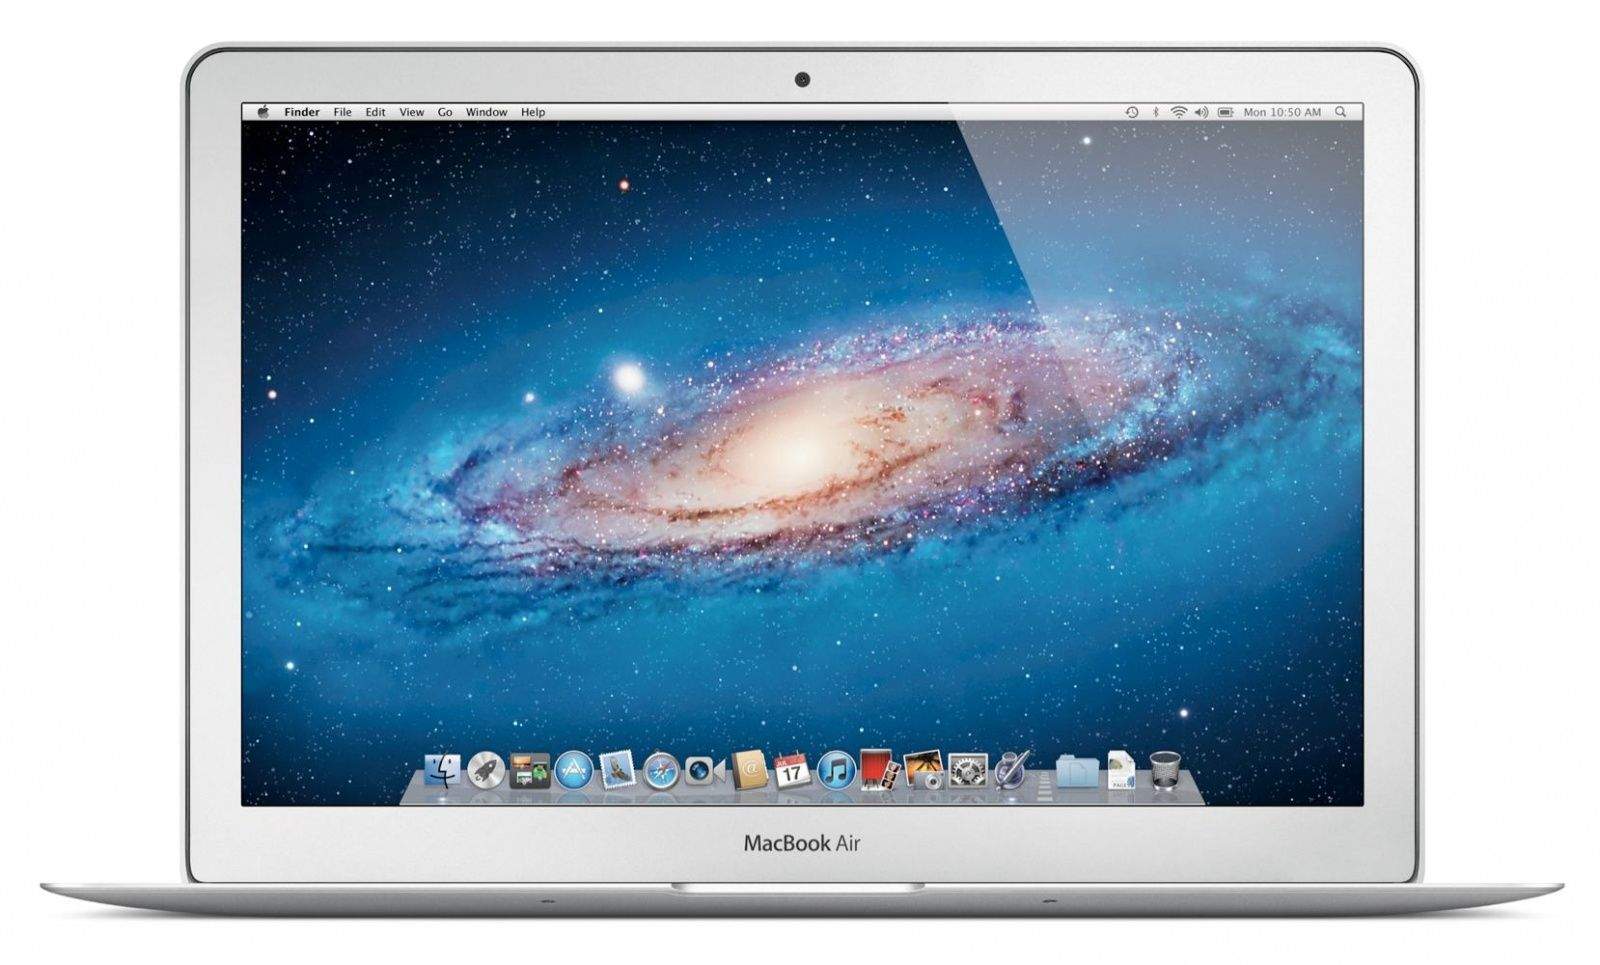 Macbook Air Firmware Update